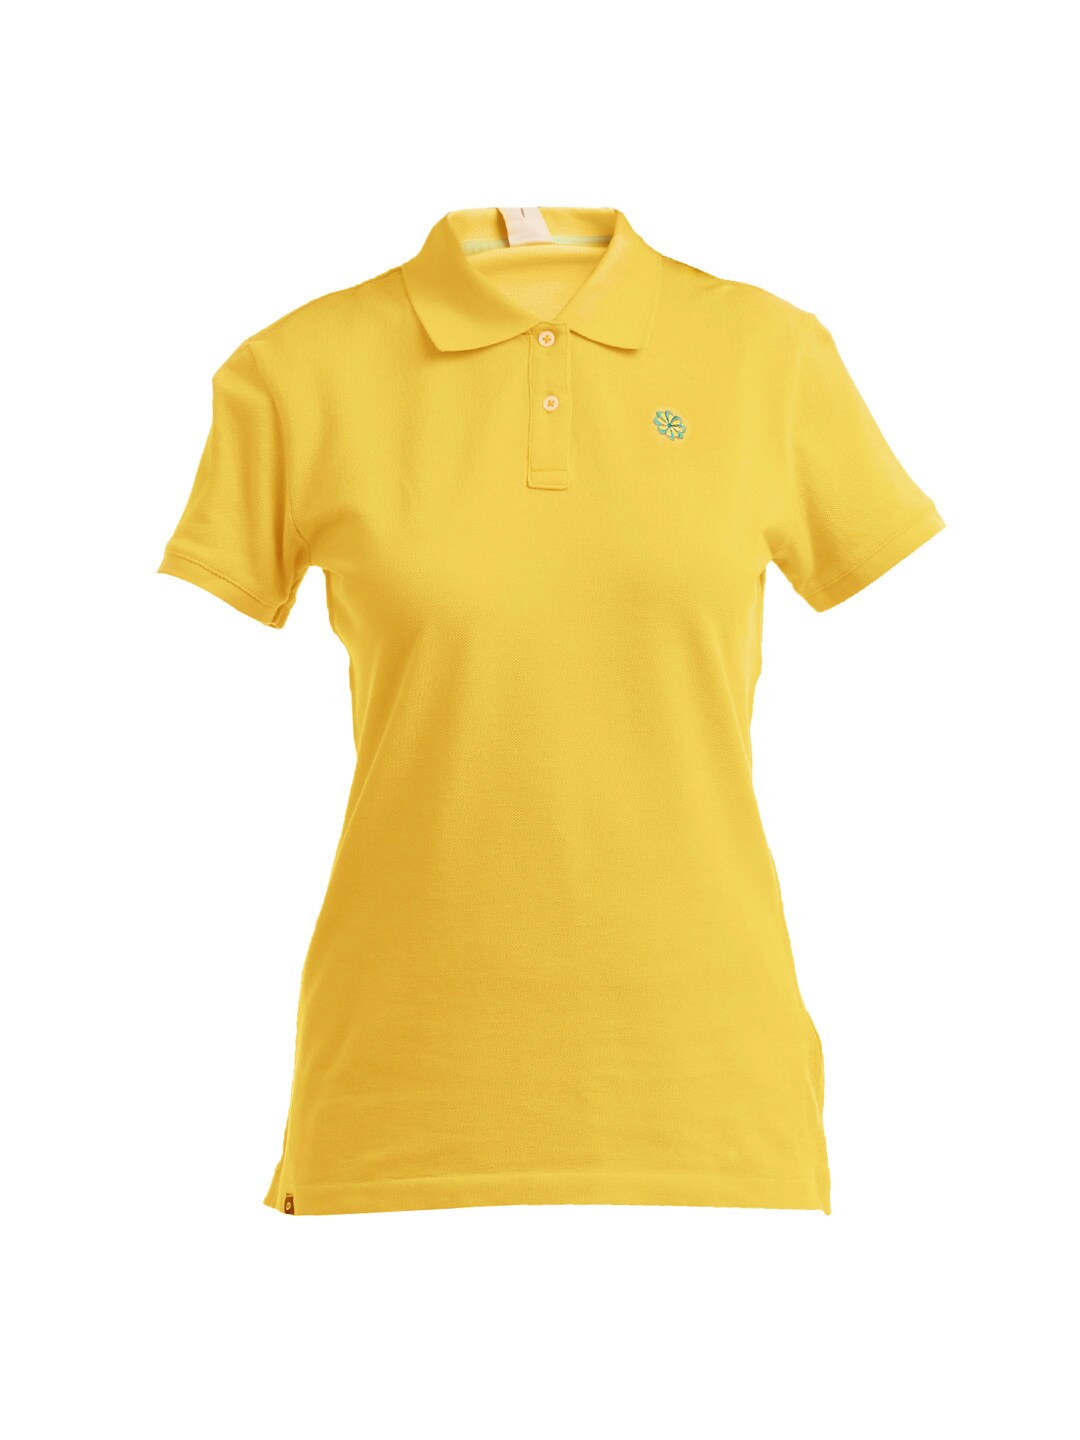 Nike Women Yellow Polo Neck T-shirt